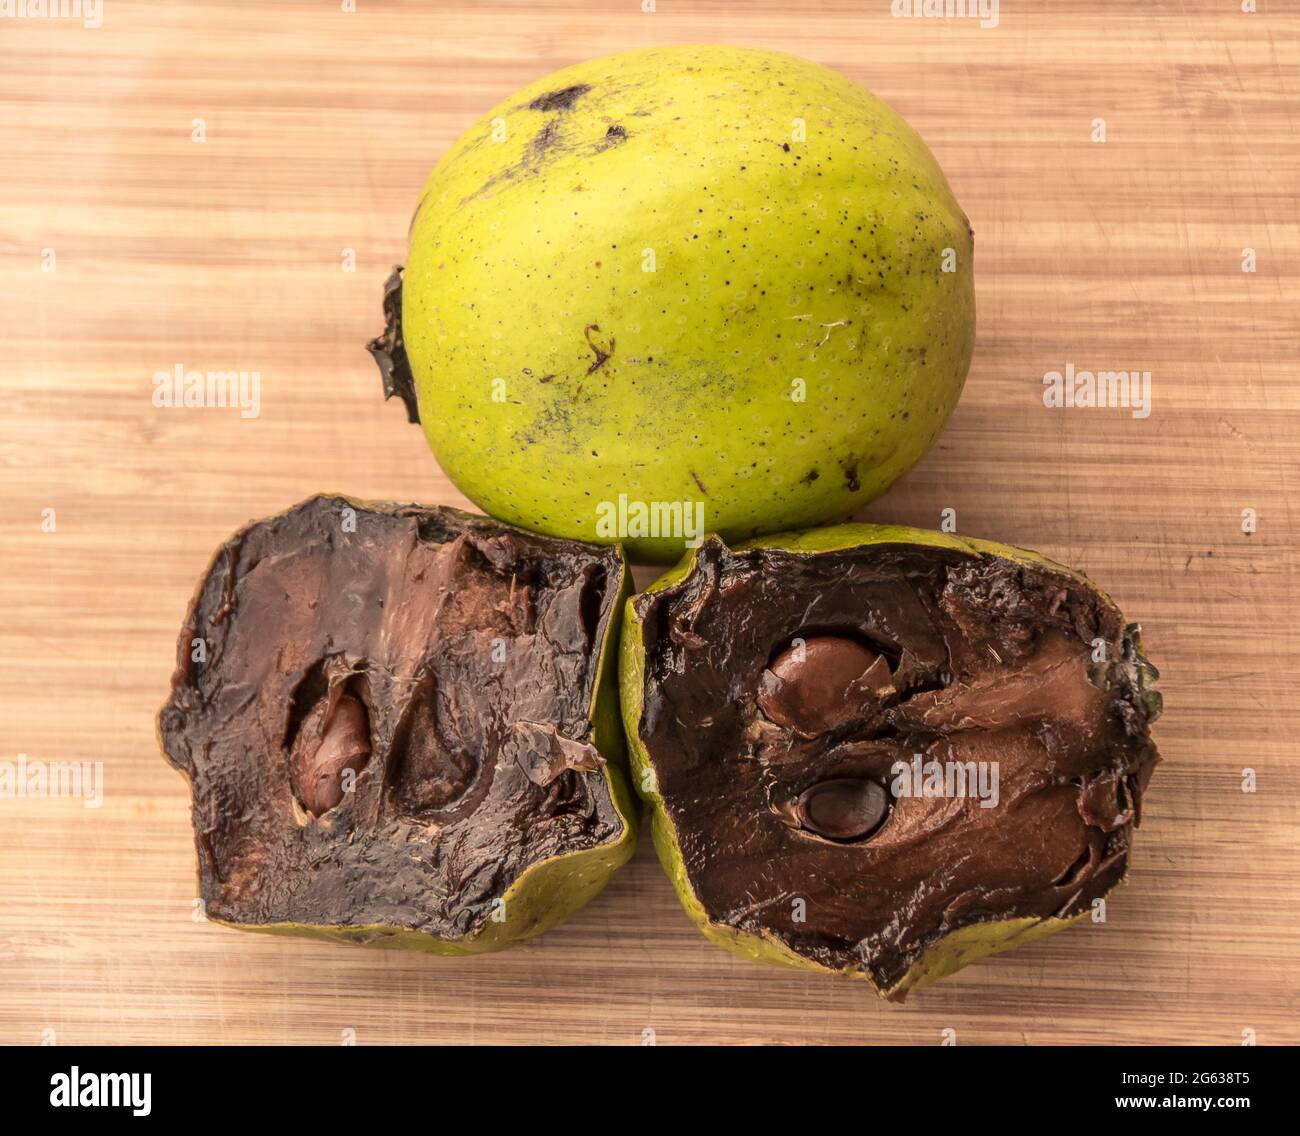 Reife Schokopudding-Früchte, schwarzes Sapote, Diospyros nigra. Hellgrüne Haut mit weichem, dunkelbraunem Fleisch. Gewachsen in Australien, verzehrfertig. Stockfoto